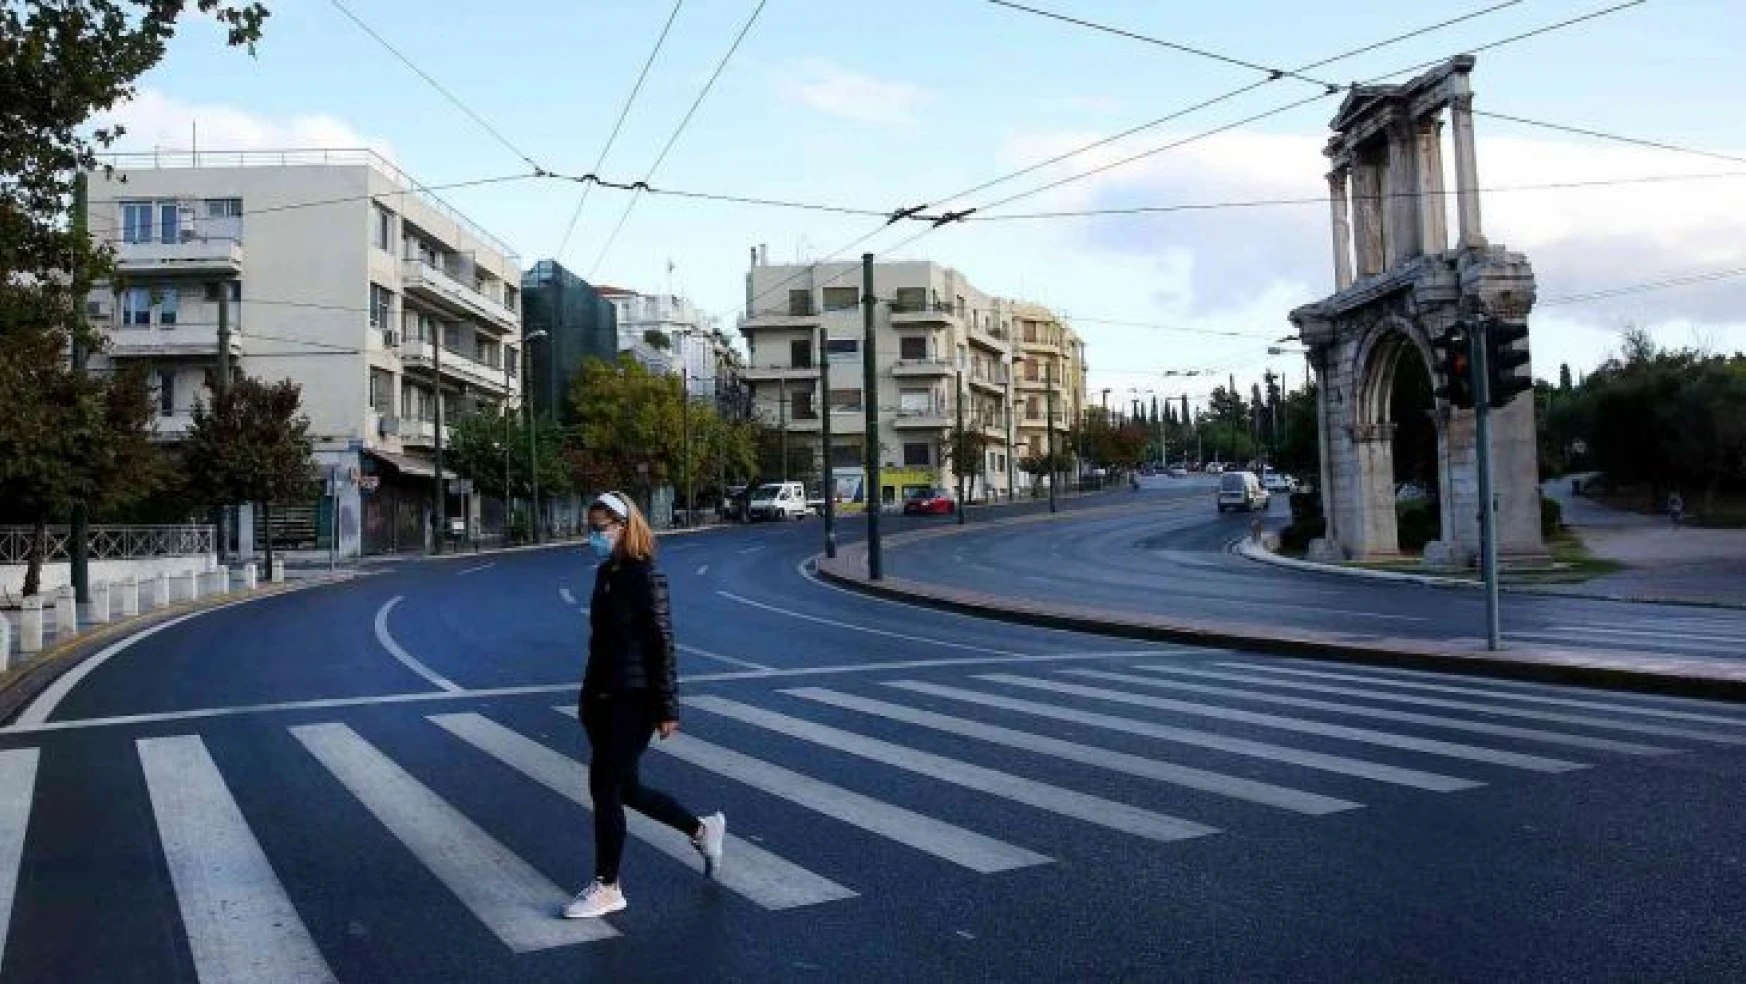 Yunanistan'da 1 Haziran'dan itibaren halka açık alanlarda maske kullanımı kalkıyor